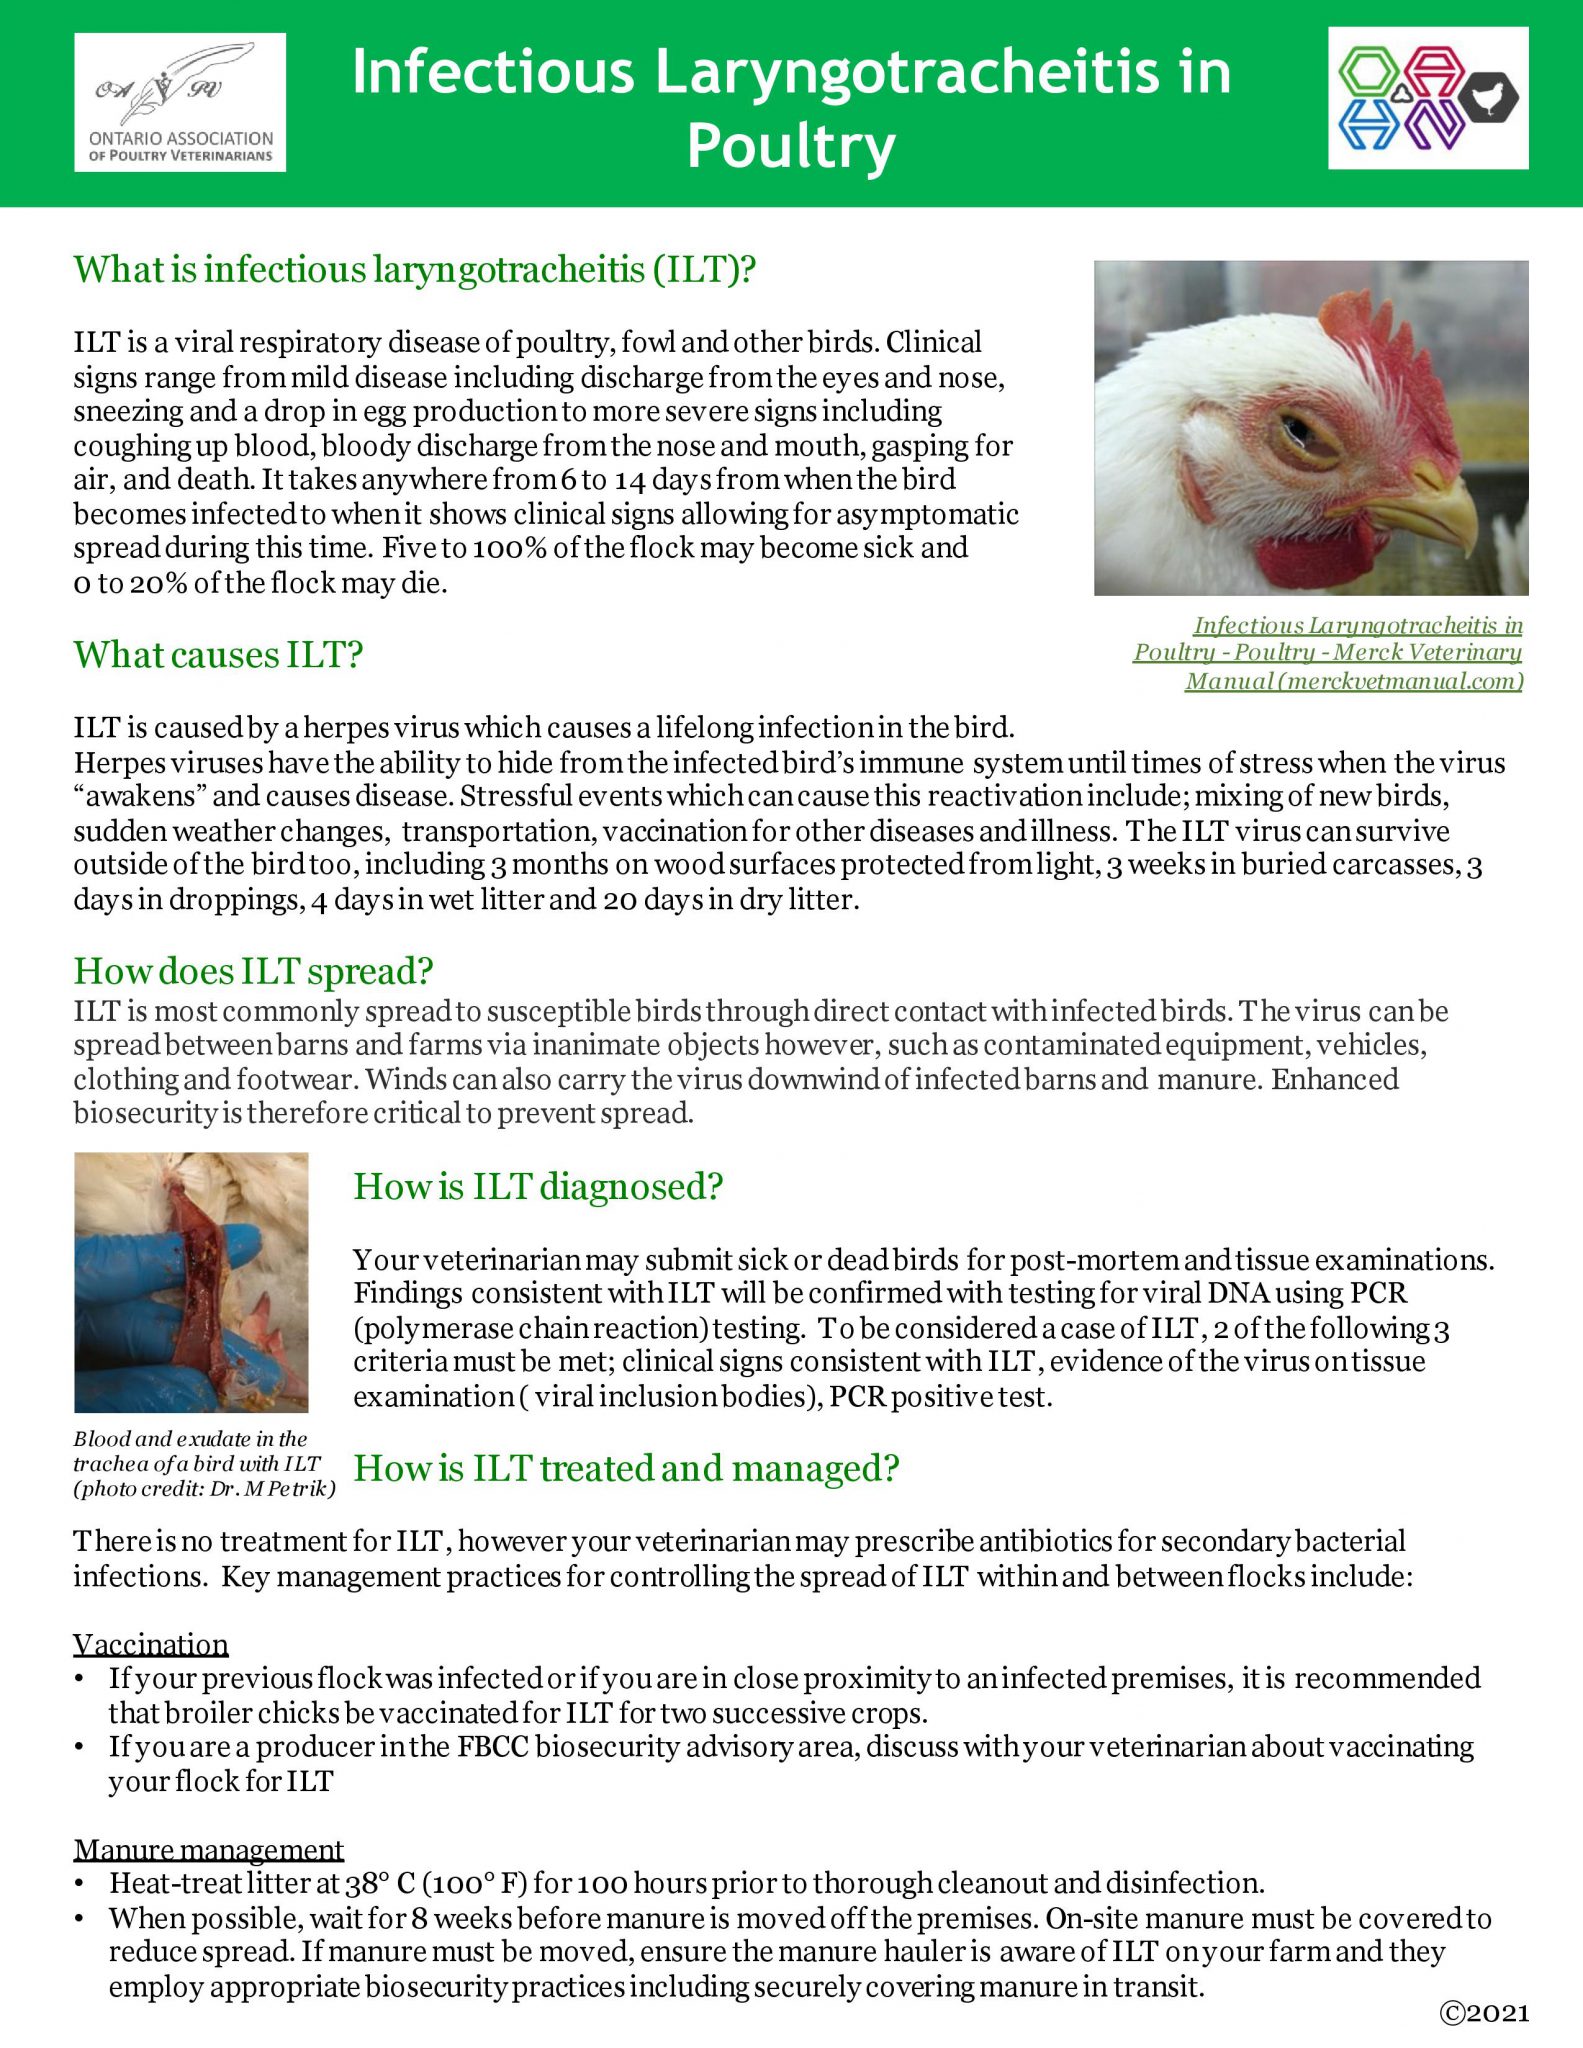 Infectious Laryngotracheitis In Poultry Factsheet Ontario Animal